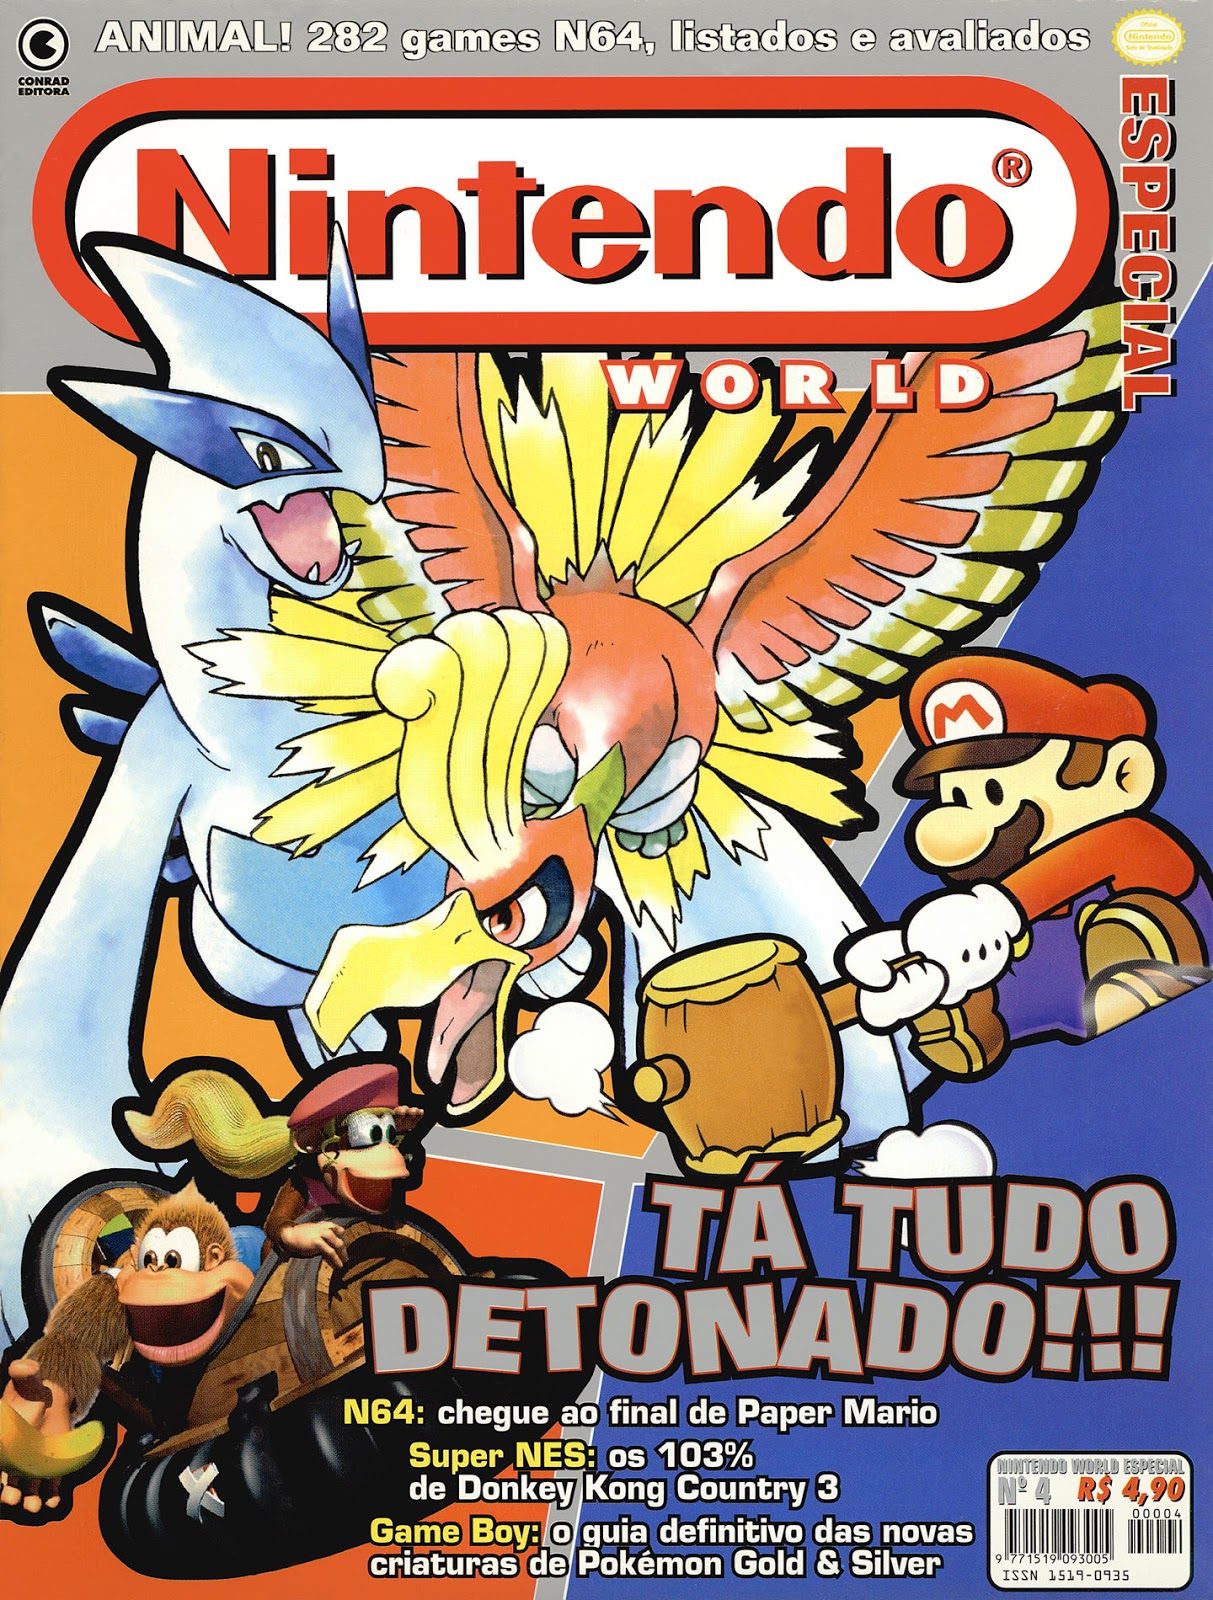 Nintendo World Especial Nº 01